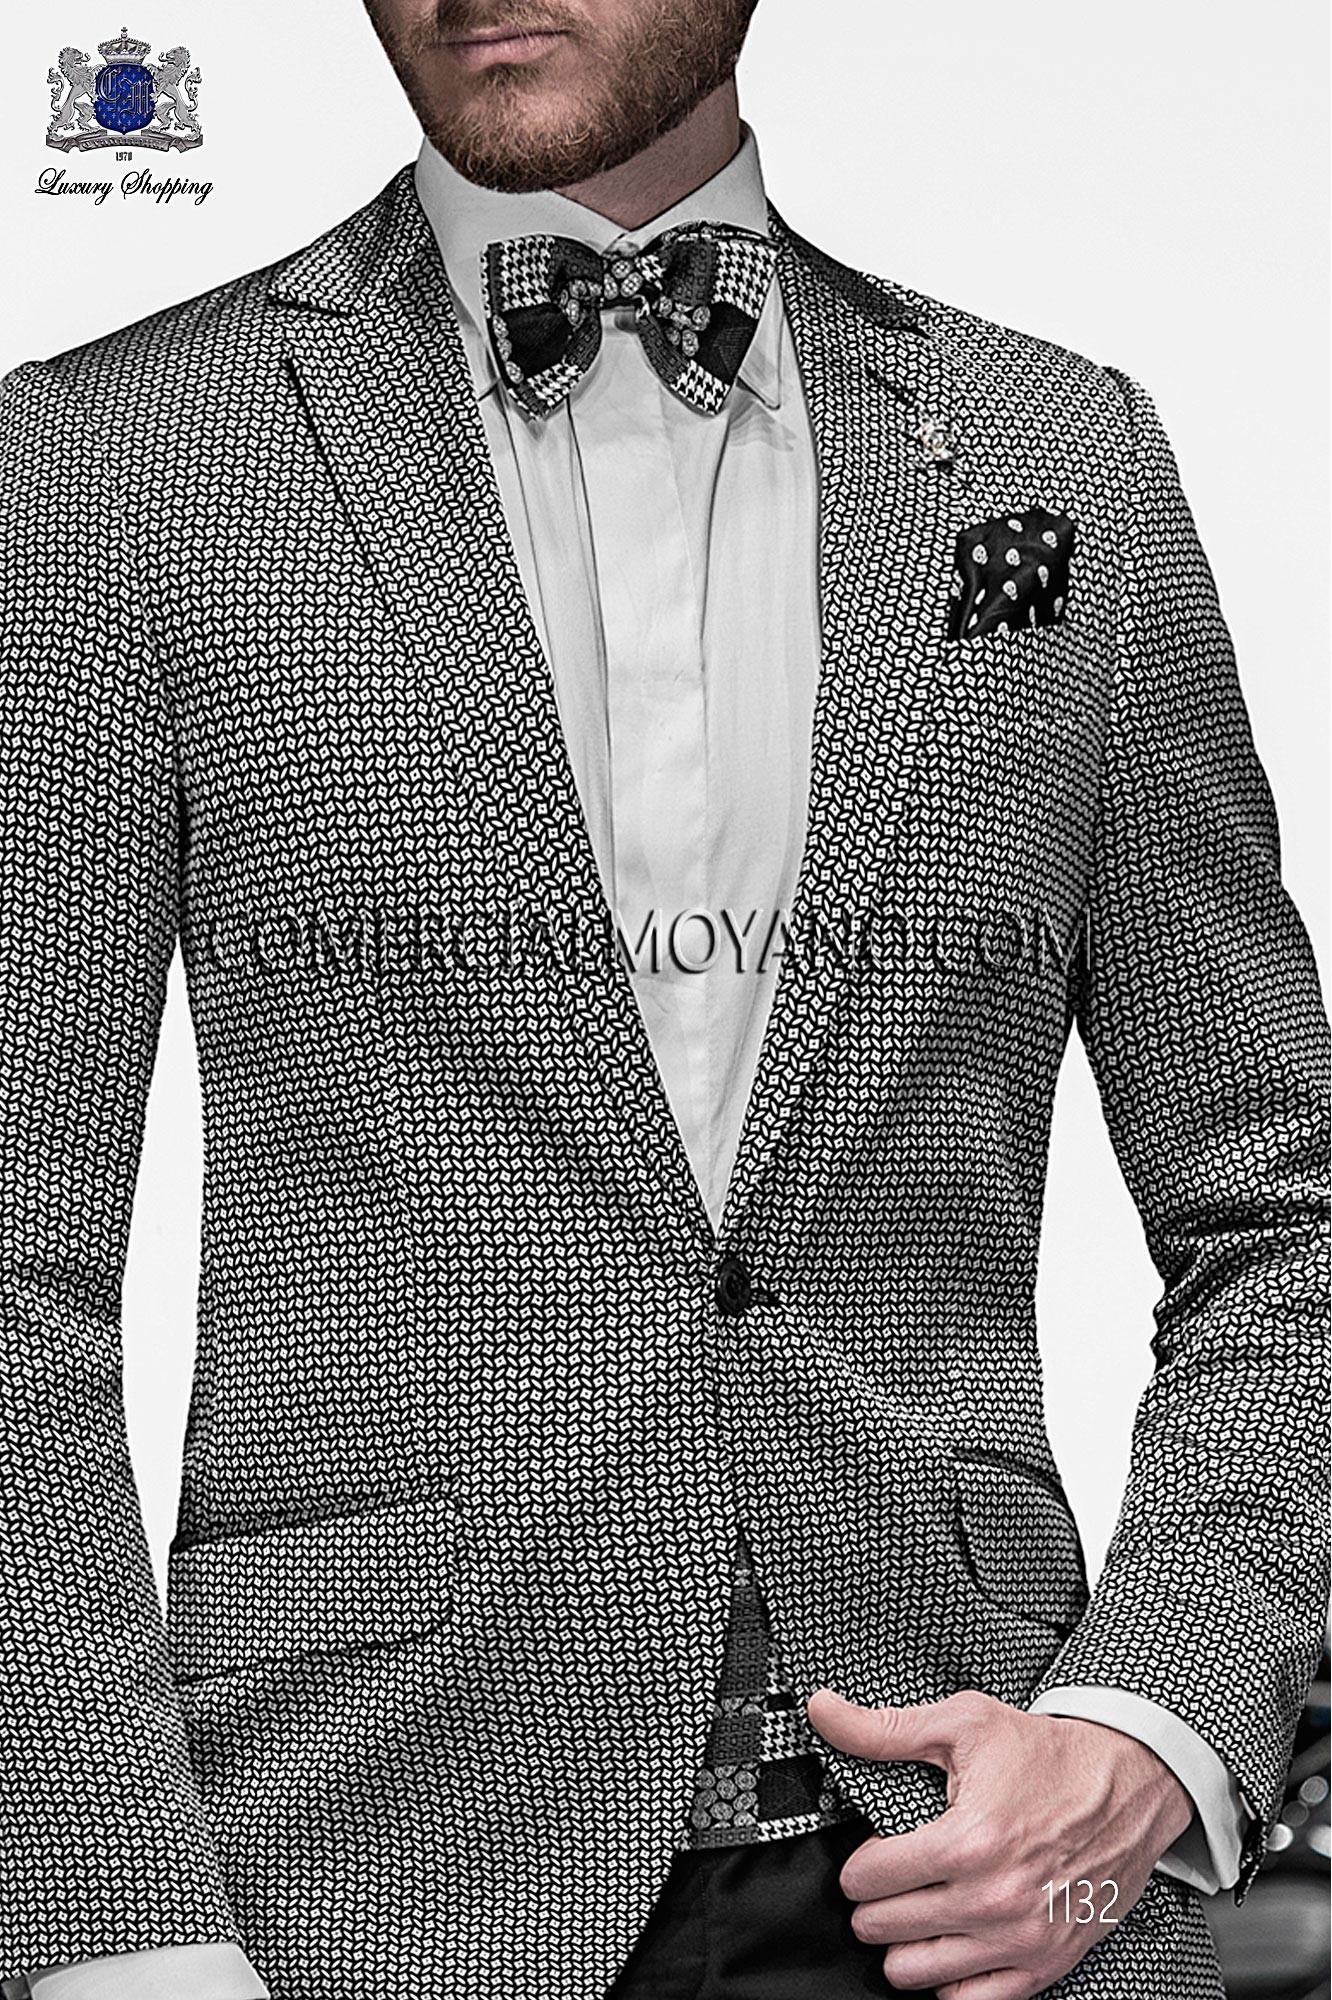 Italian emotion black/ silver men wedding suit, model: 1132 Mario Moyano Emotion Collection